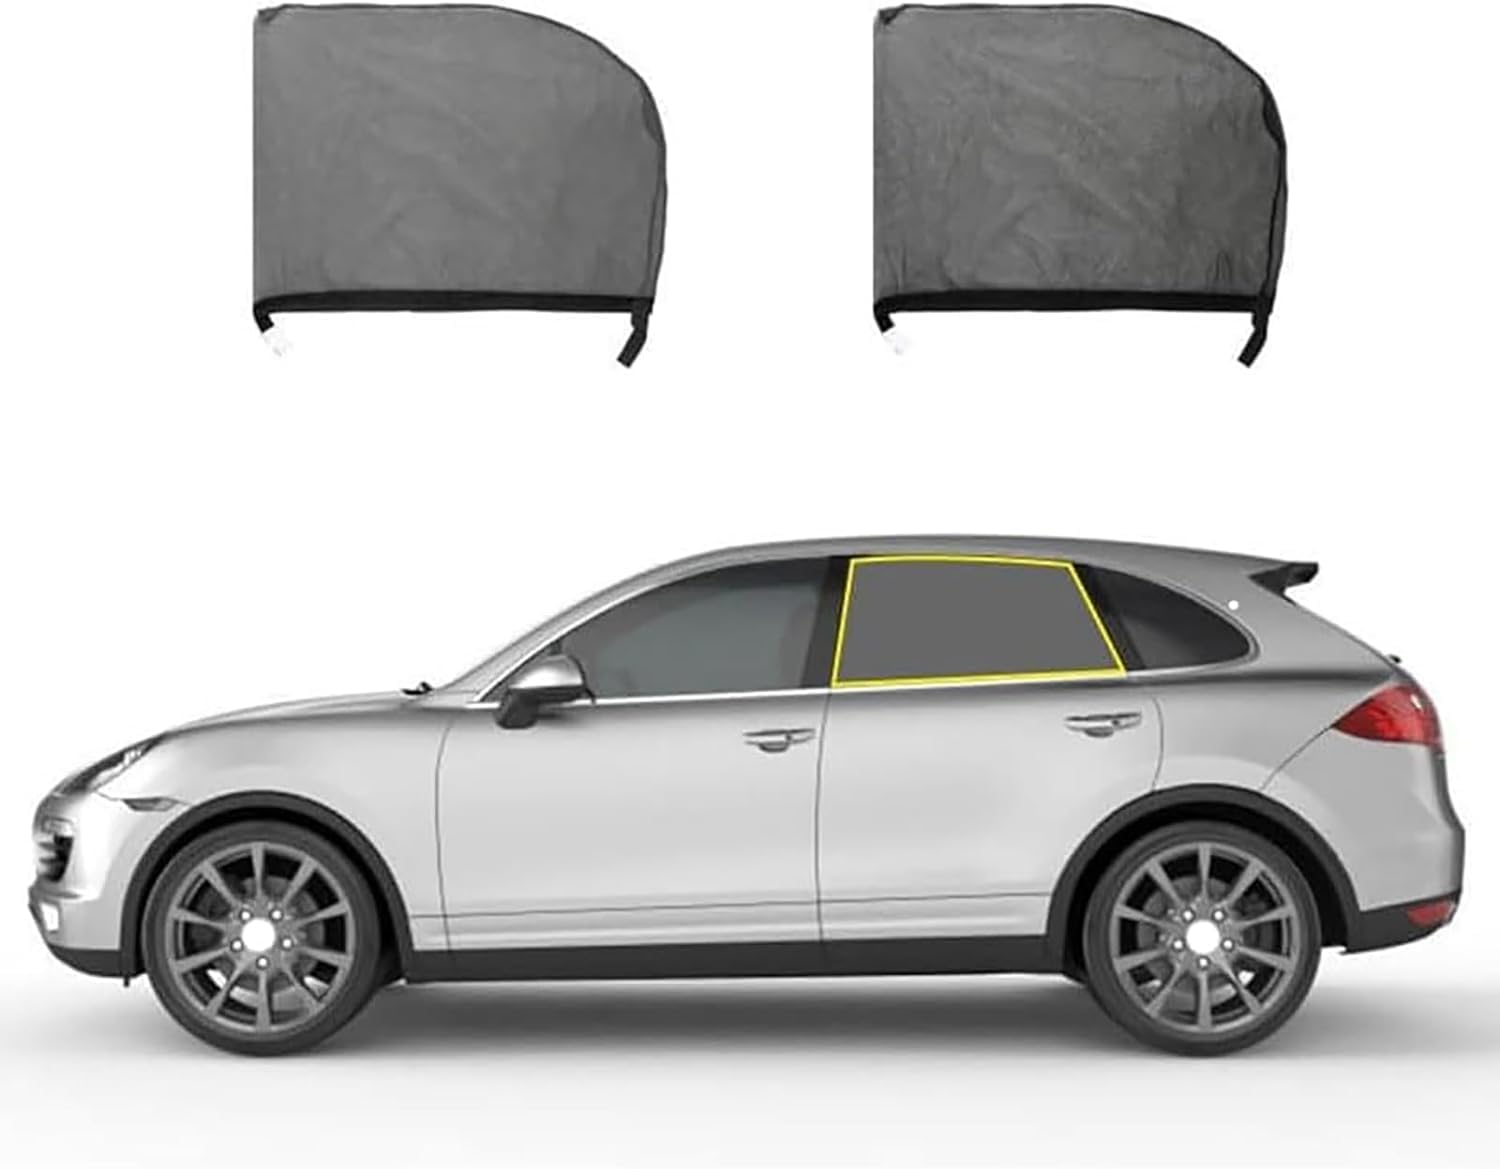 Sonnenschutz Auto Baby für Audi Q7 (7seats) 2006-2015, Baby UV Schutz Autofenster Sonnenschutz Vorhang Schützt Kinder & Haustiere,B/Rear-Window von WXFBFB66